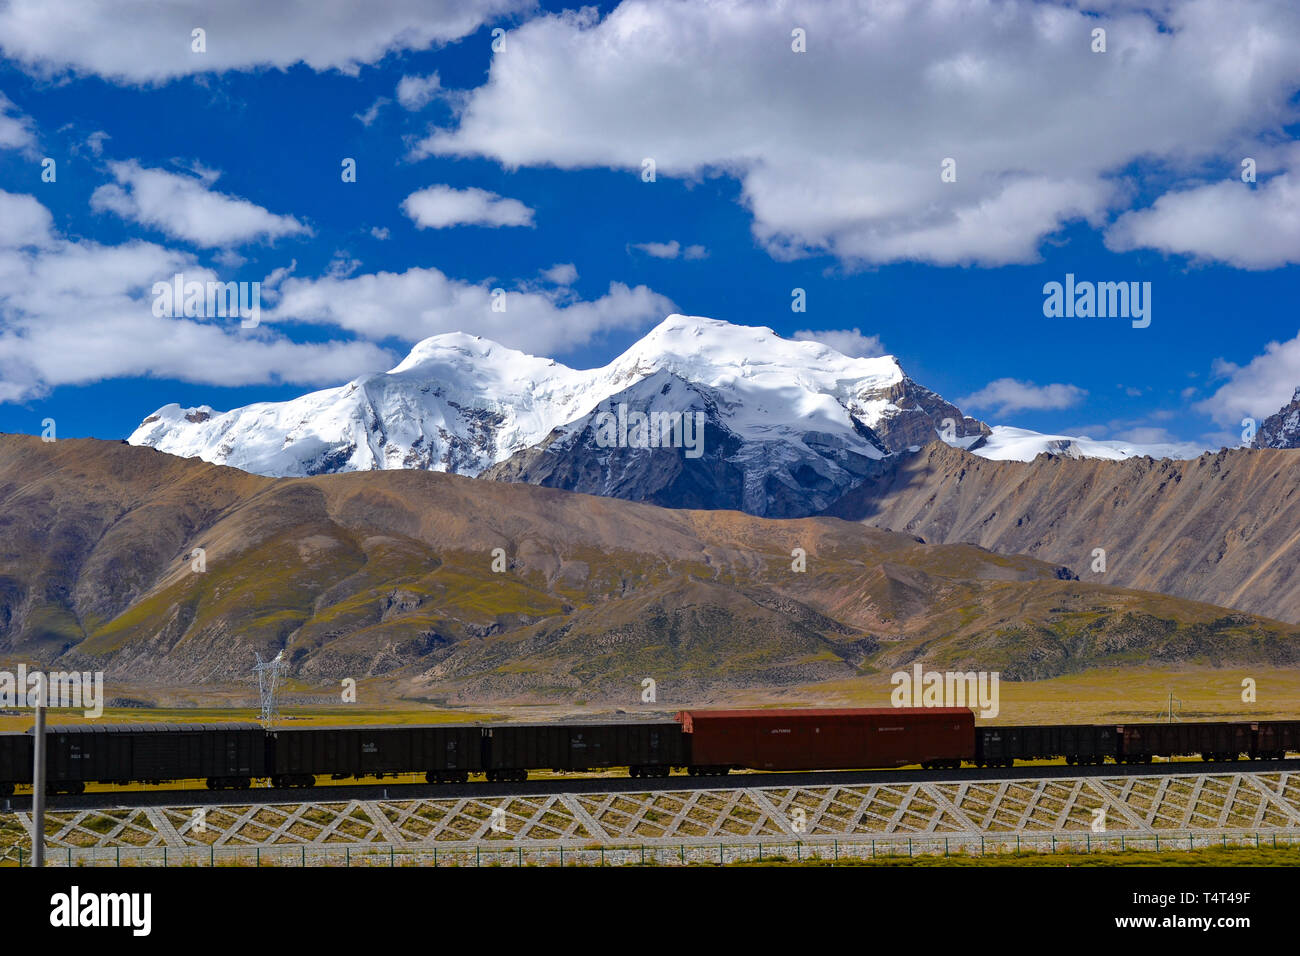 Le Tibet au Qinghai, un chemin de fer de haute altitude sur le plateau tibétain au Tibet, Chine Banque D'Images